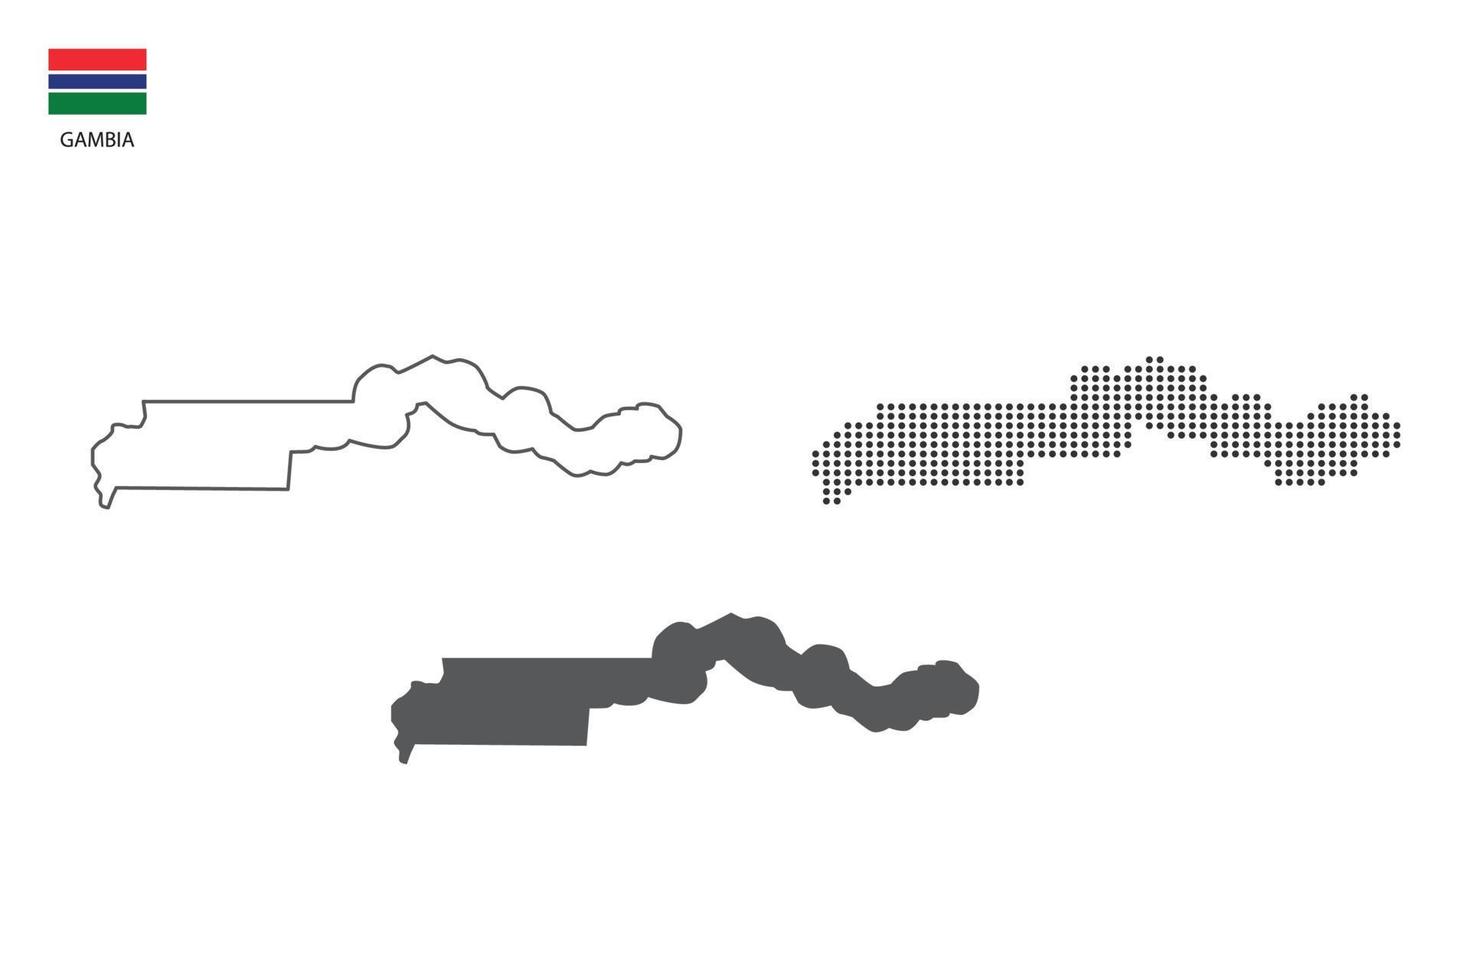 3 versões do vetor da cidade do mapa da gâmbia pelo estilo de simplicidade de contorno preto fino, estilo de ponto preto e estilo de sombra escura. tudo no fundo branco.